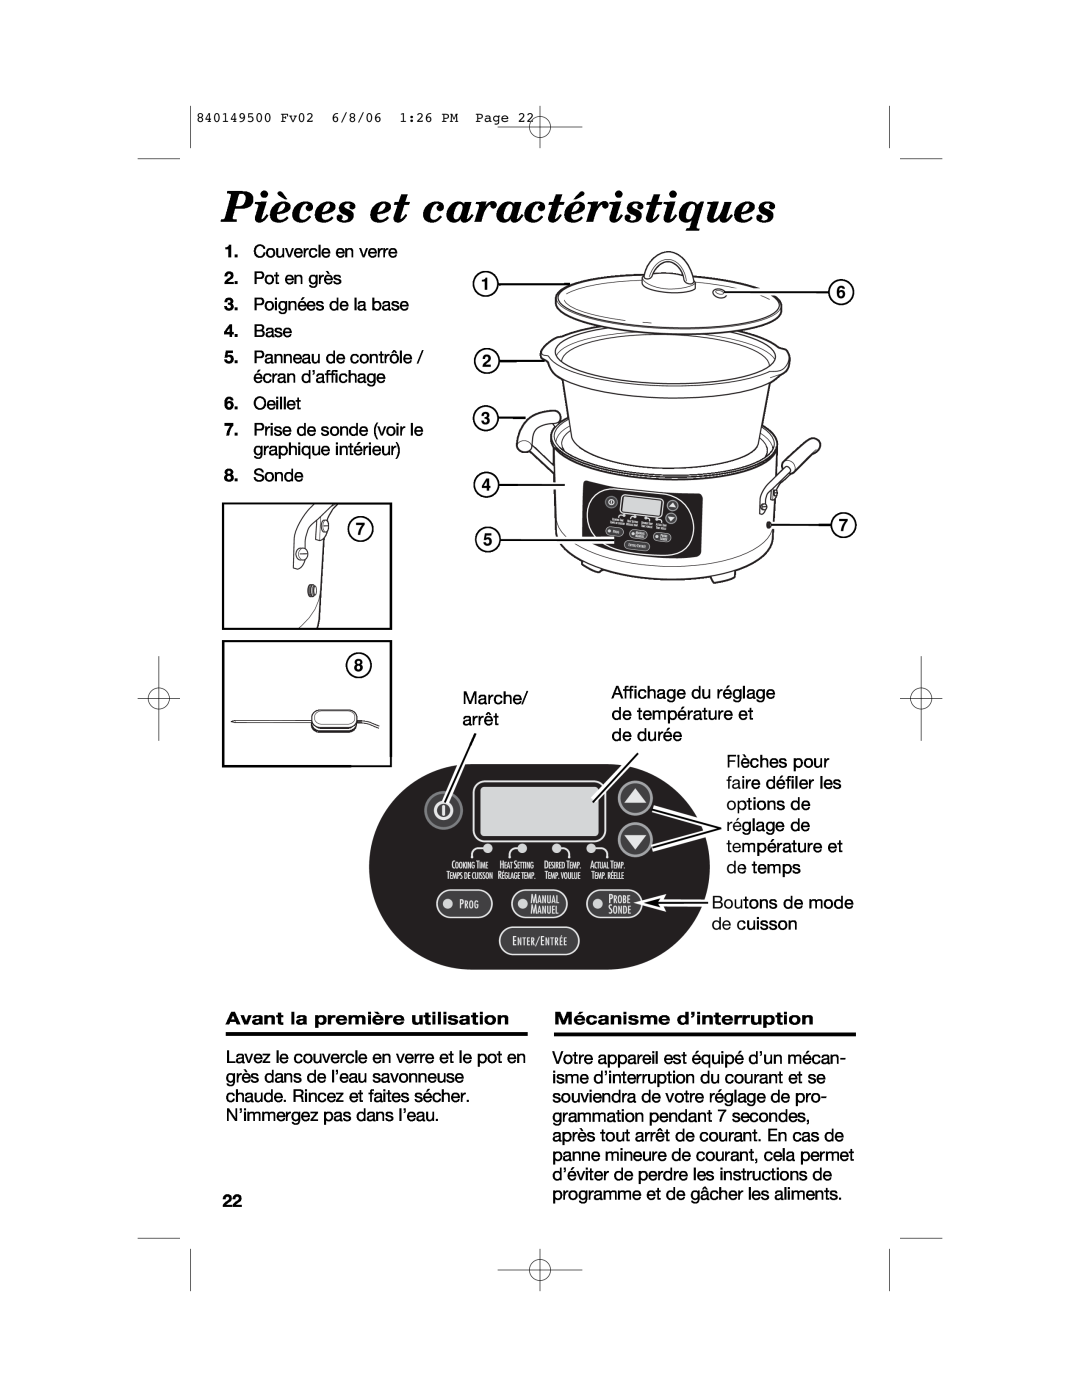 Proctor-Silex 840149500 manual Pièces et caractéristiques, Avant la première utilisation, Mécanisme d’interruption 